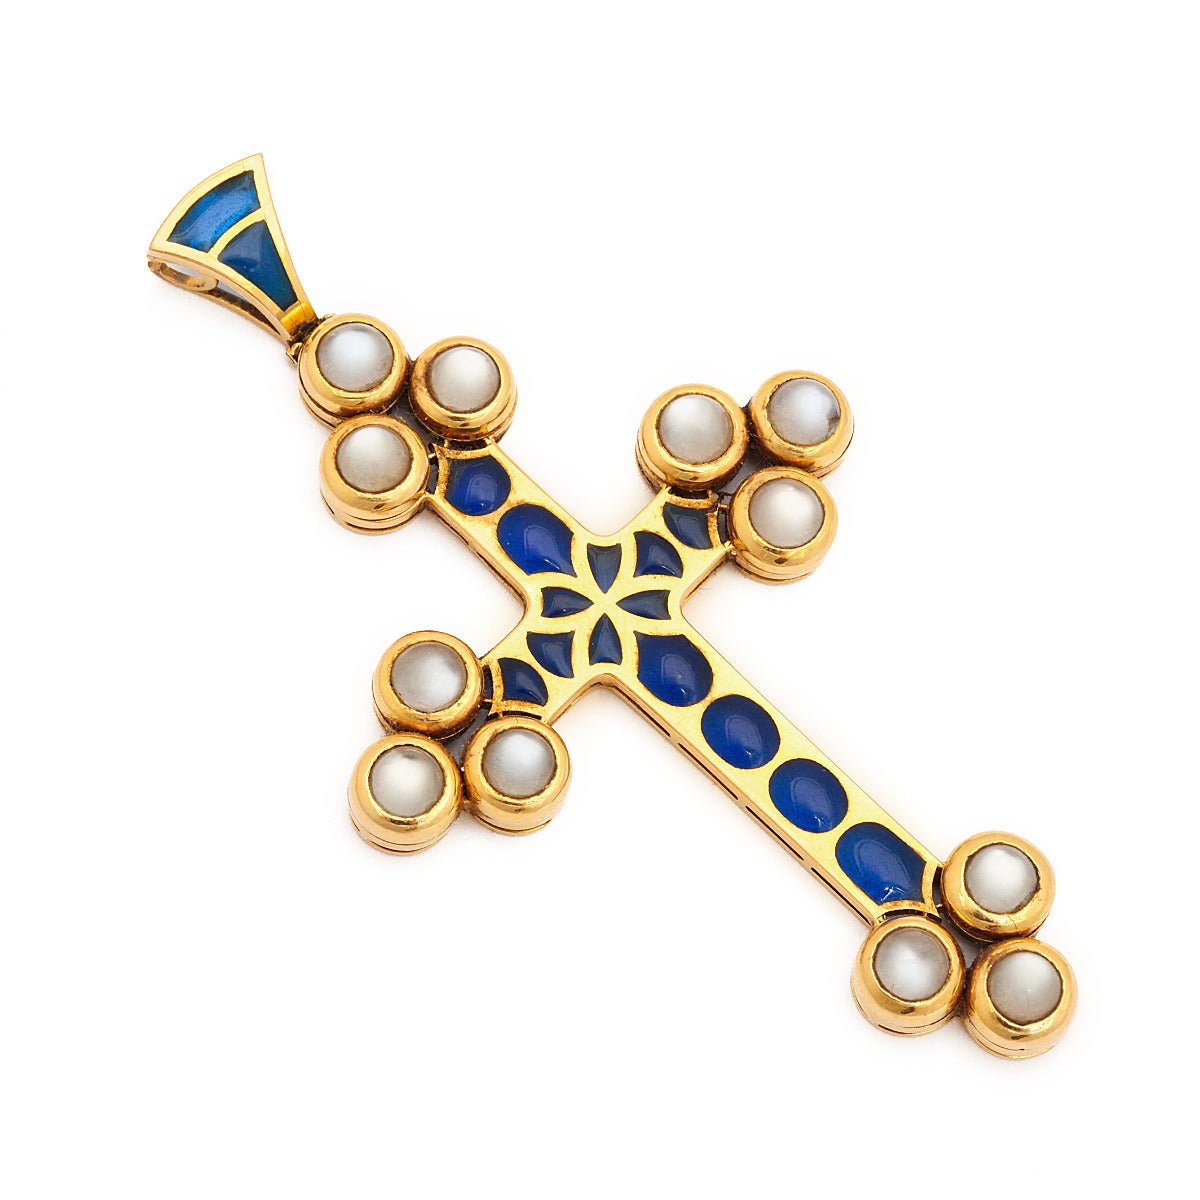 Renaissance revival gold pendant cross set with cabochon moonstones and blue plique-à-jour enamel.

English, ca. 1970
Length: 3 inches